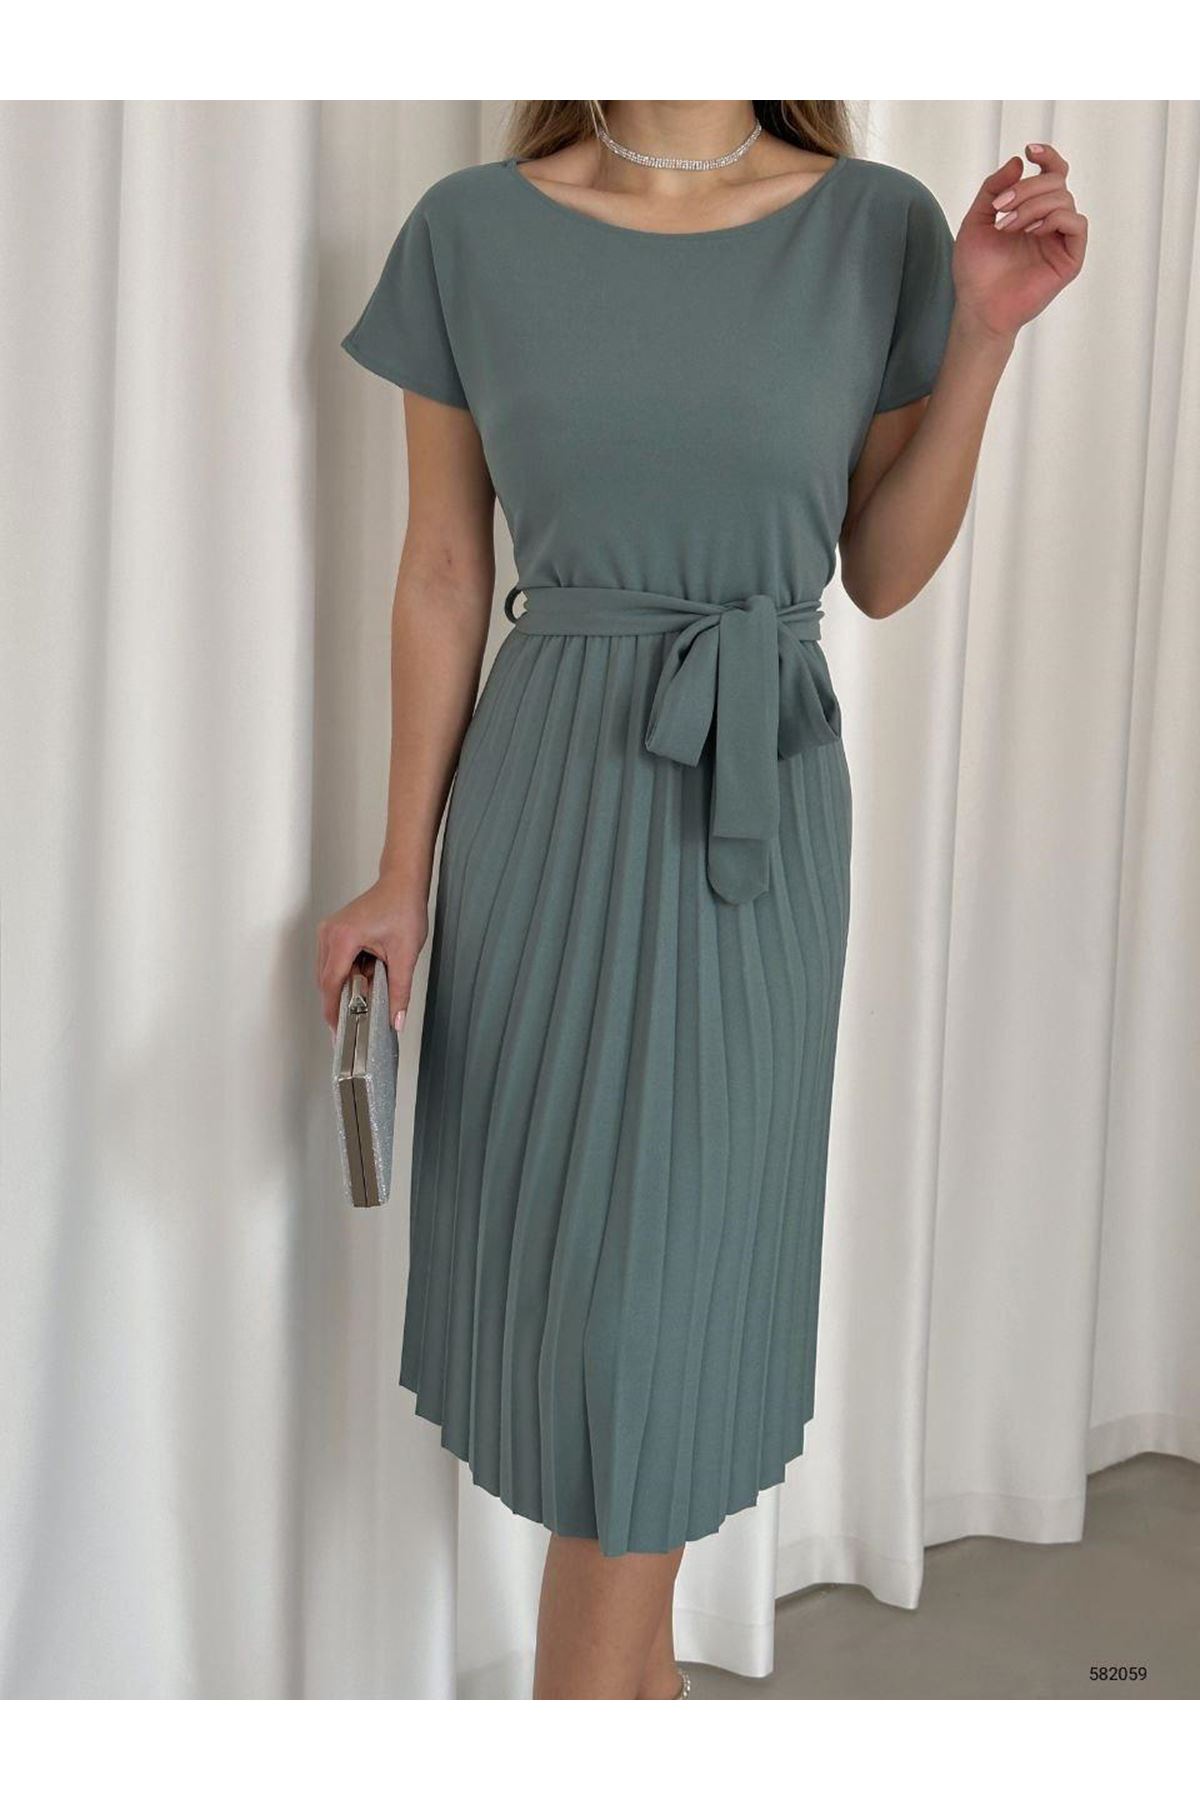 Kadın Mint Krep Kumaş Pliseli Kuşaklı Dizaltı Elbise 2E-2128